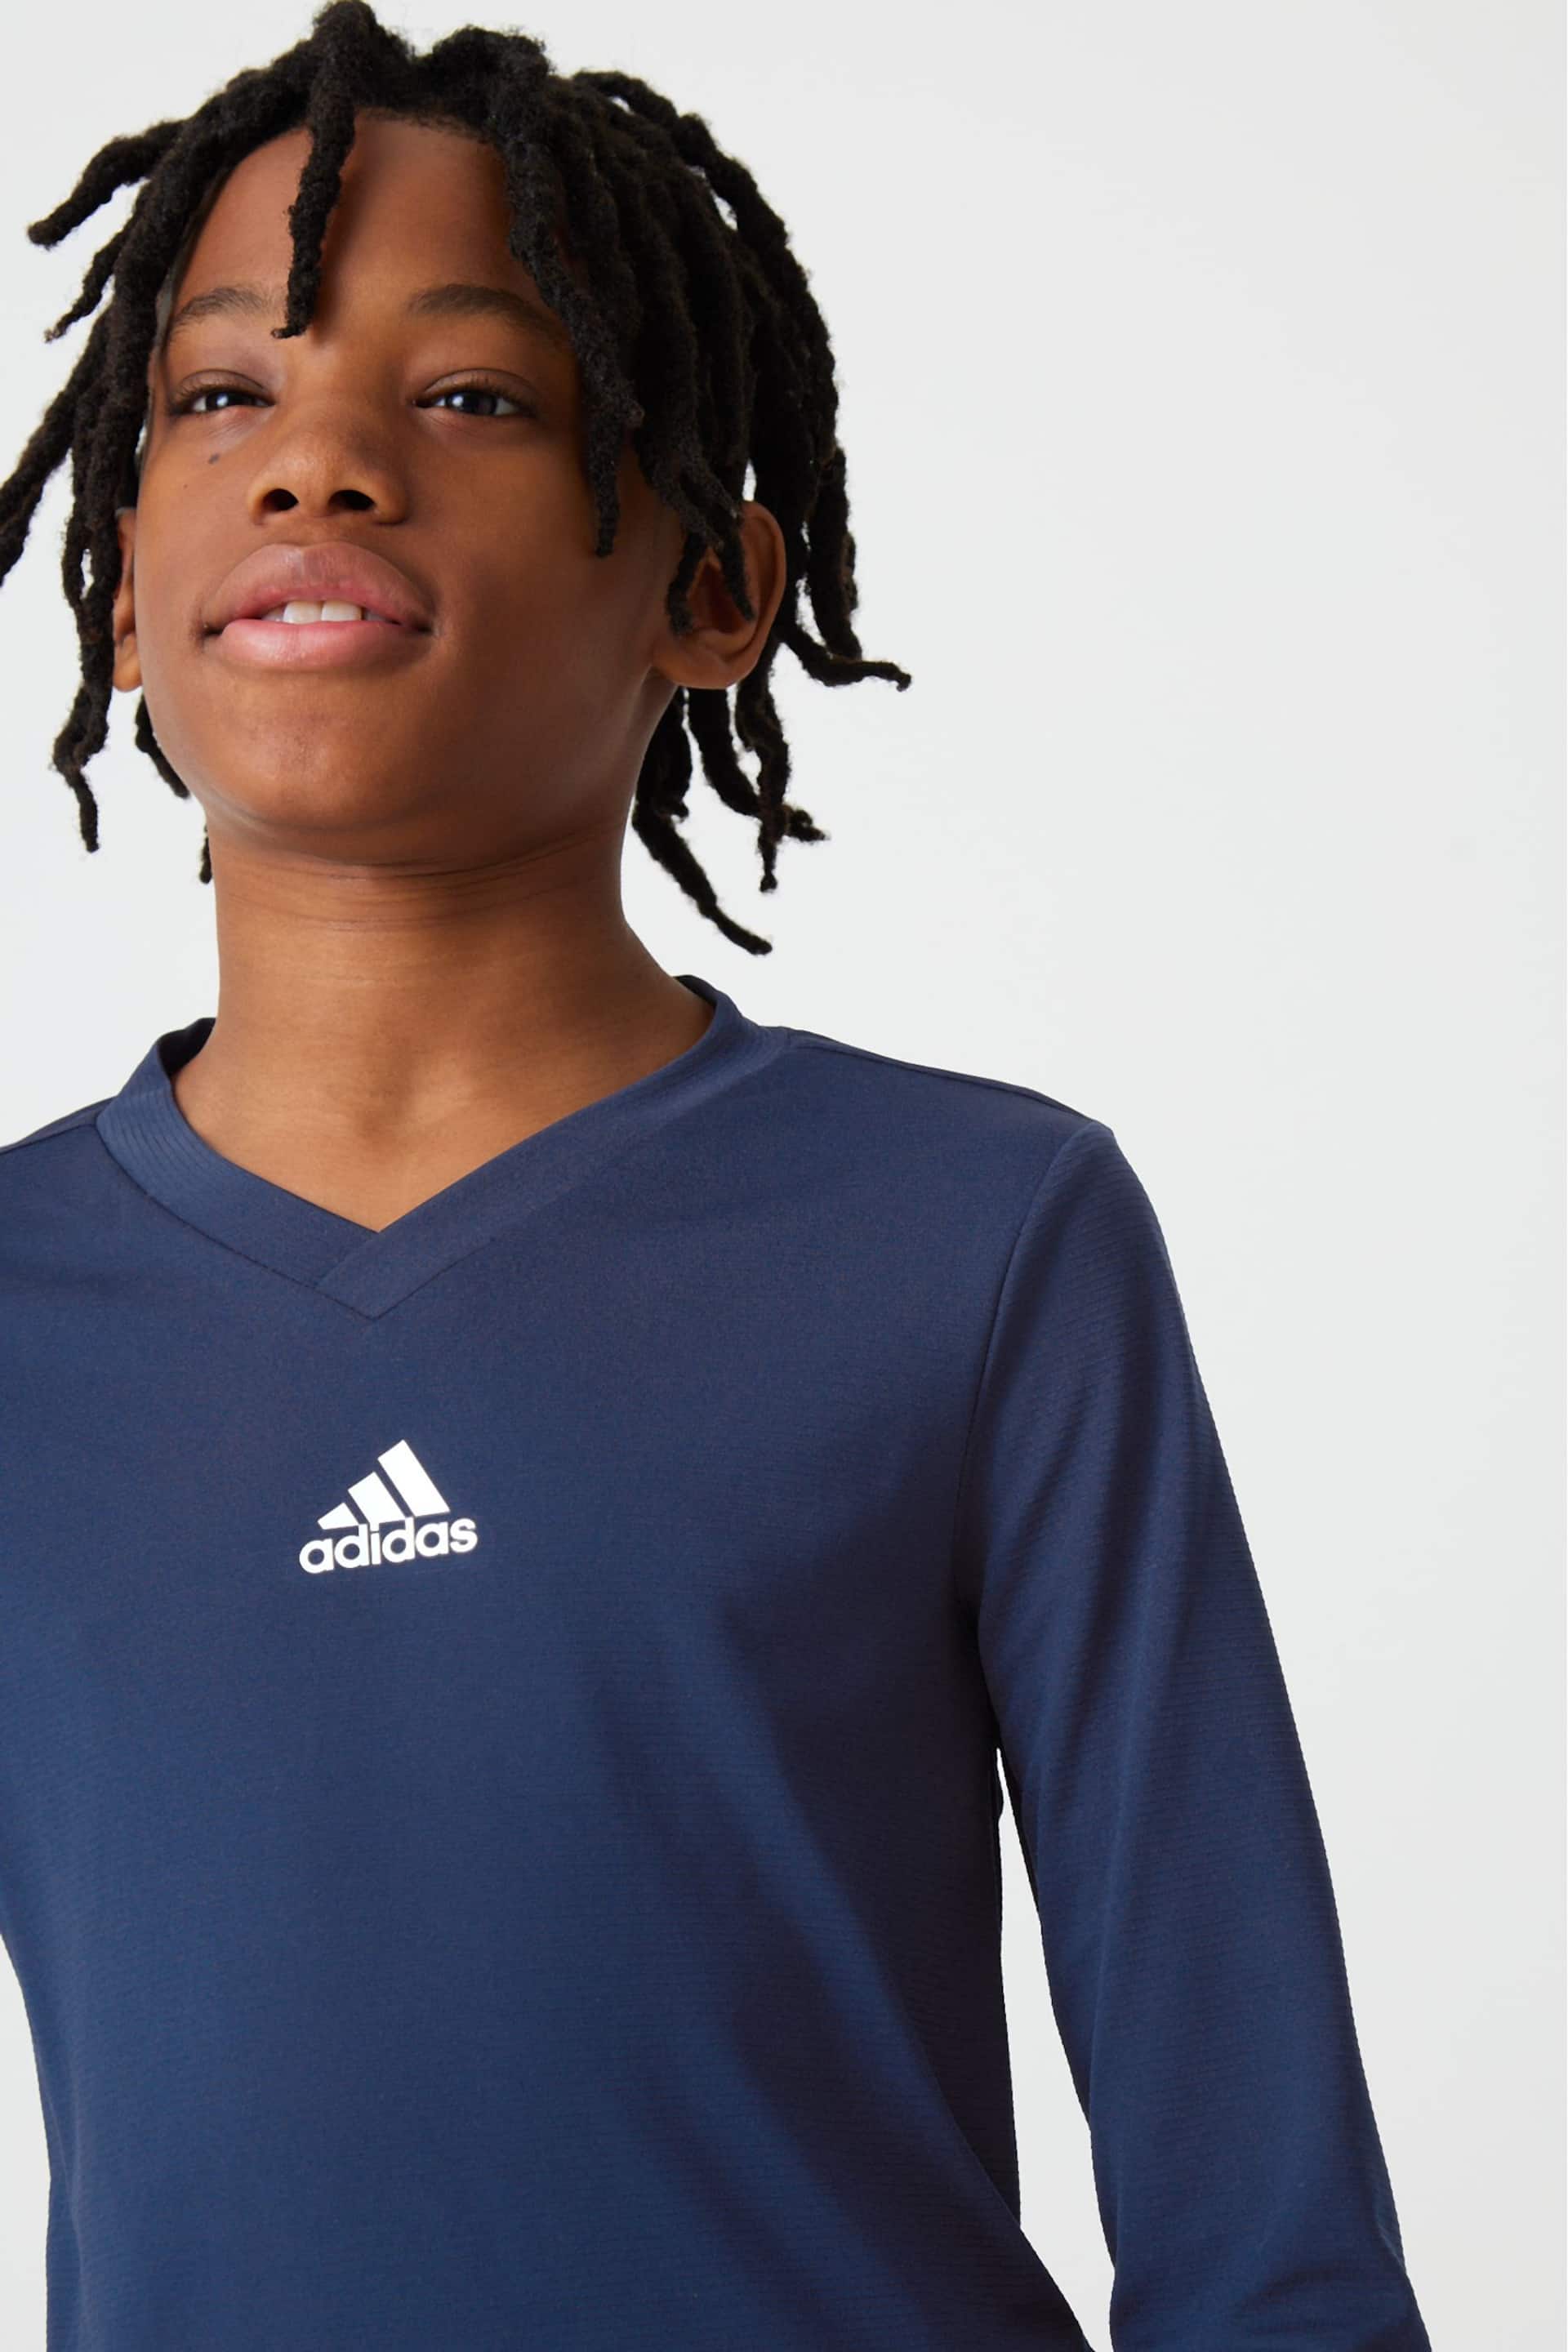 adidas Blue Team Base T-Shirt - Image 4 of 10